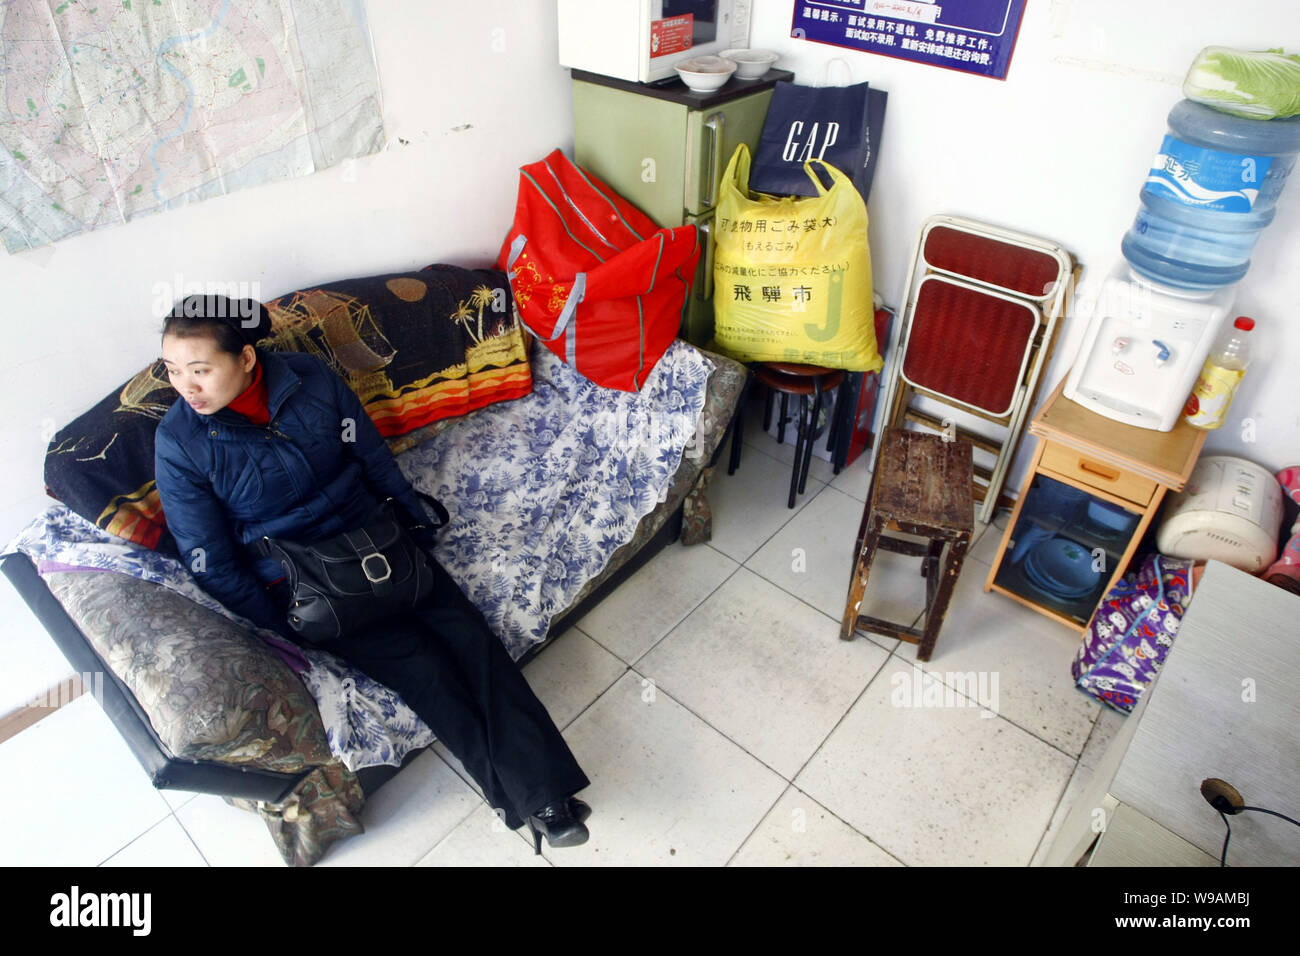 Eine chinesische Frau wartet an einem fast leeren Hausmädchen Agentur in Shanghai, China, 27. Dezember 2010. Chinesischen Großstädten wie Shanghai und Peking sind faci Stockfoto